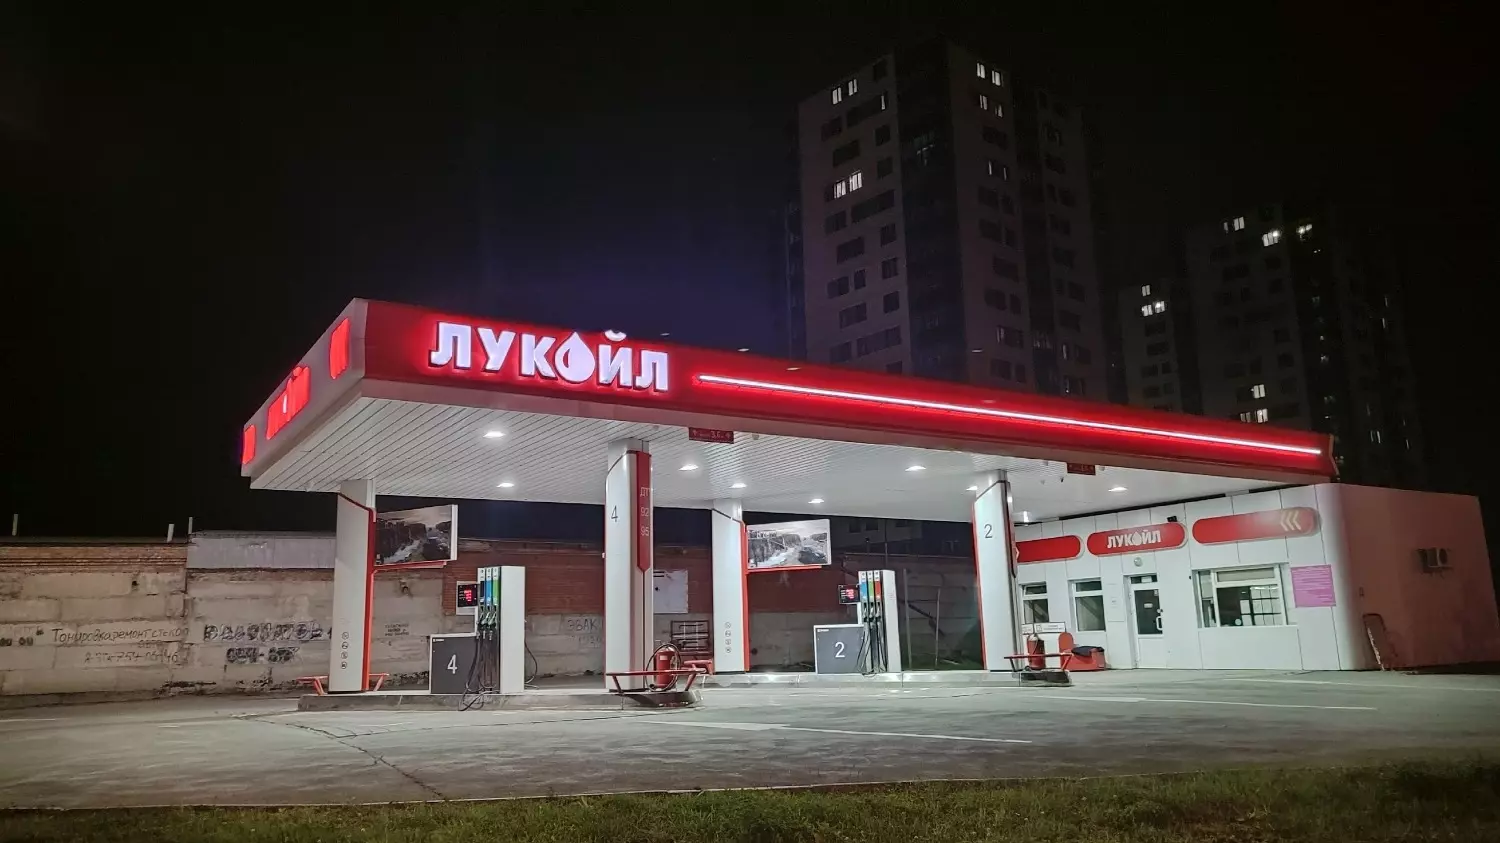 АЗС "Лукойл" в Новосибирске будут работать под другим брендом.